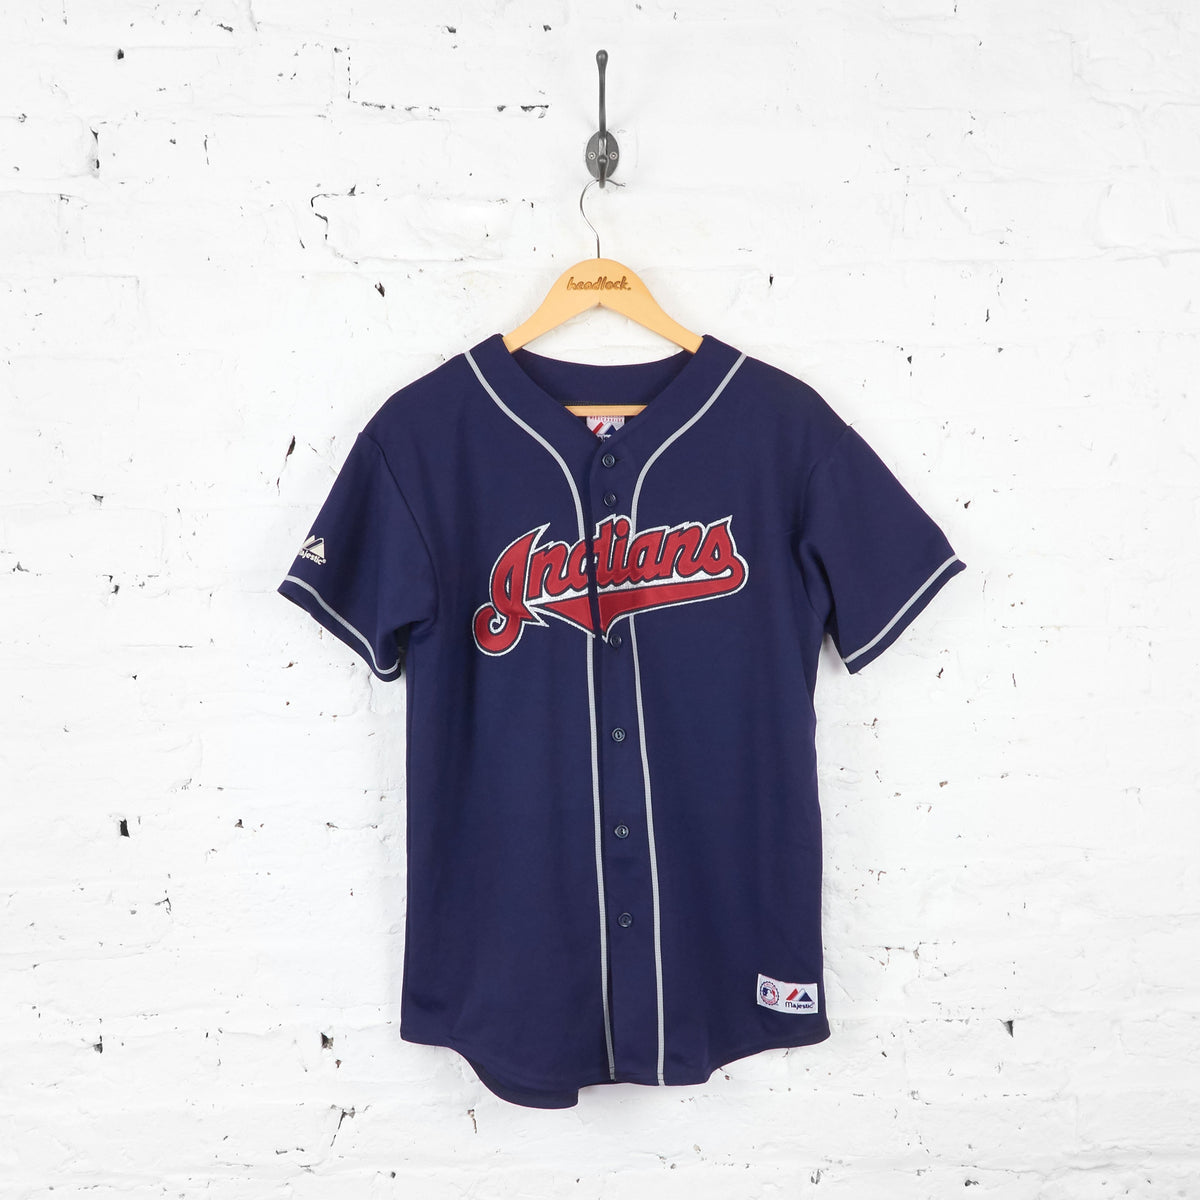 Cleveland Indians Sabathia Baseball Jersey Shirt - Blue - XL Boys – Headlock